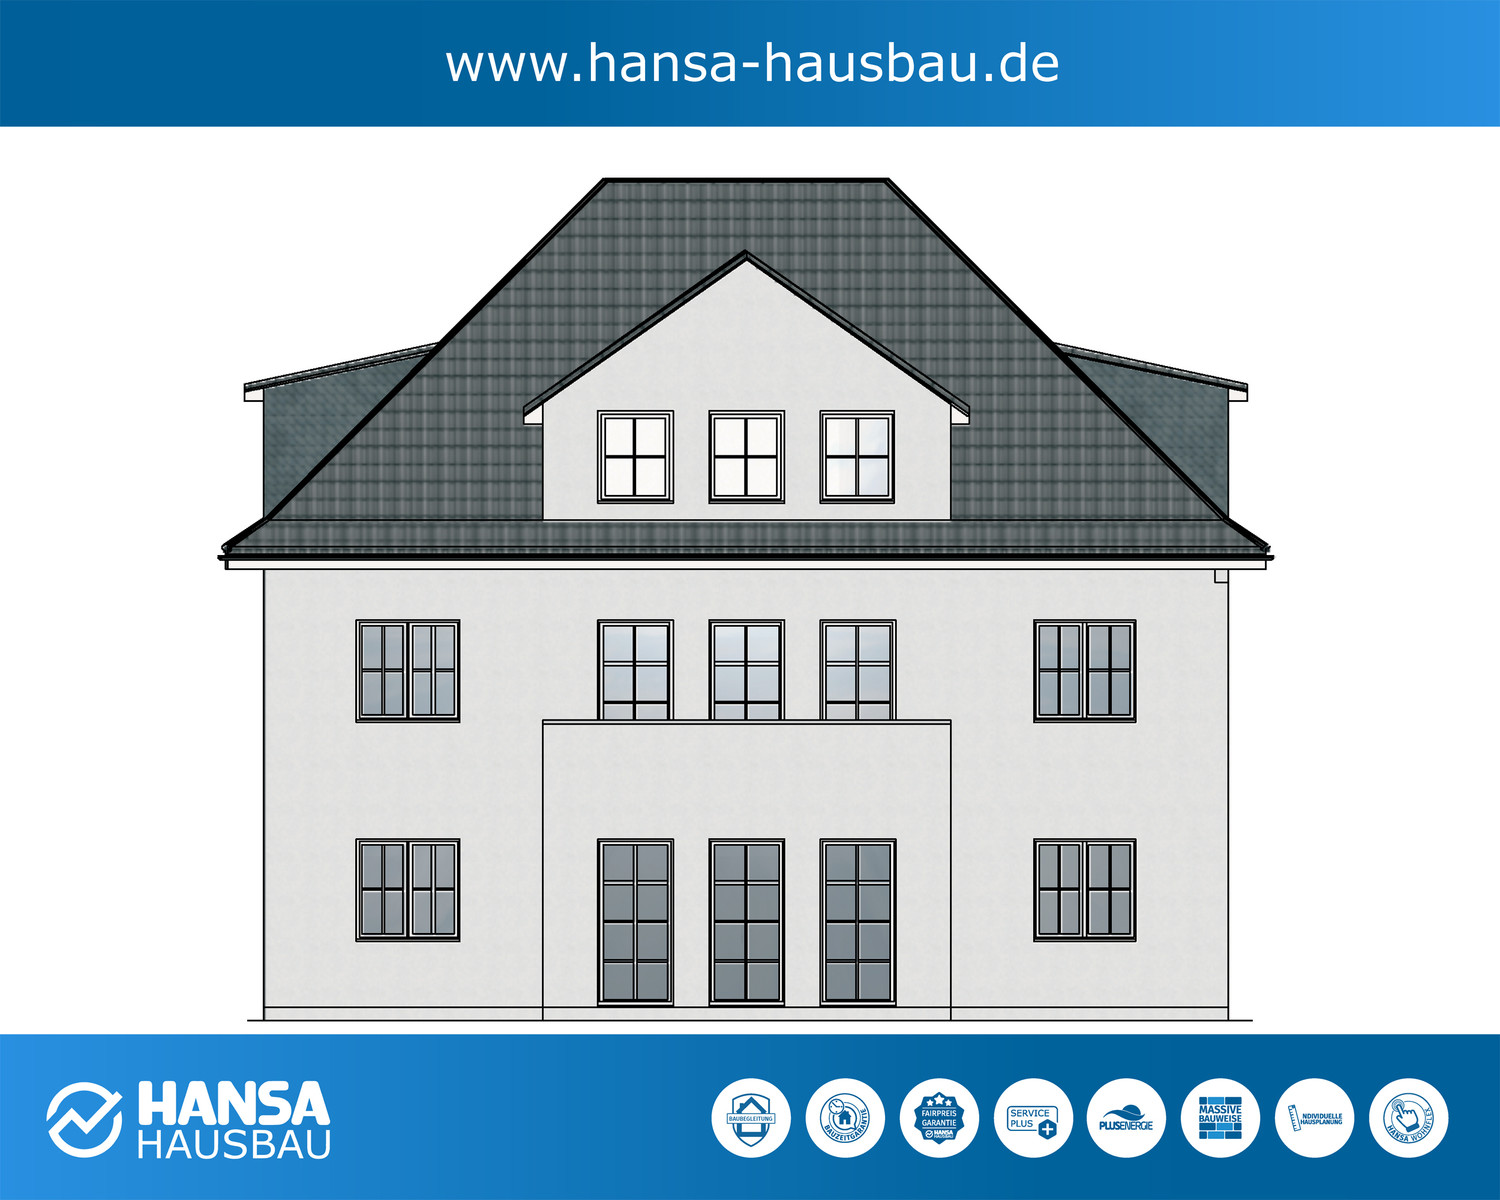 Hansa Hausbau Neubau Bauplanung